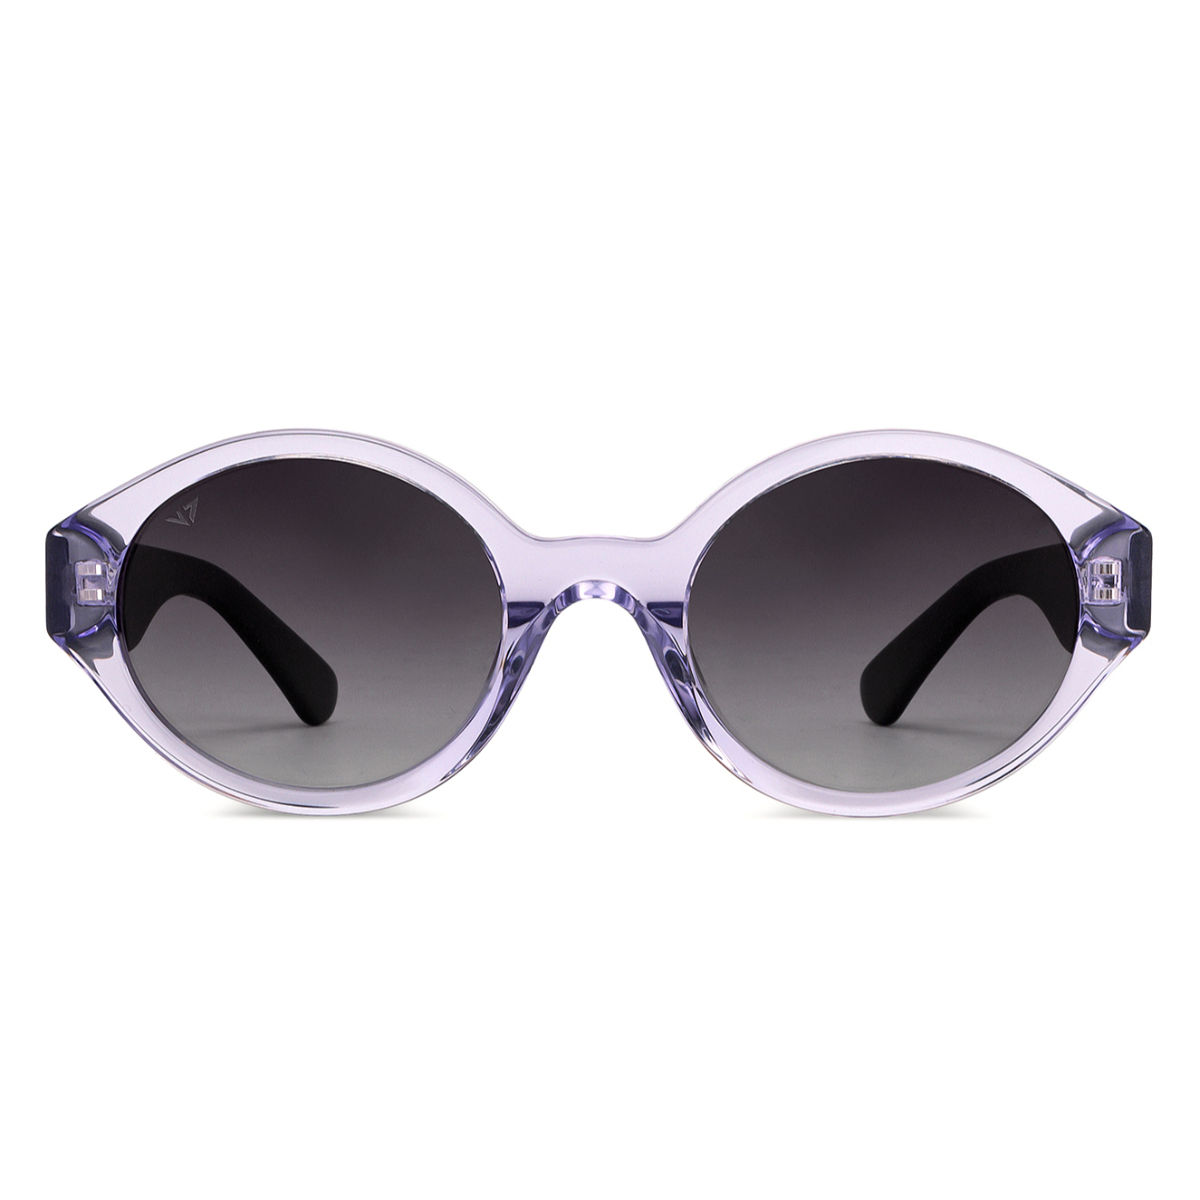 Retro Small Round Sunglasses for Men Women John Lennon Style Glasses Eyewear  | eBay